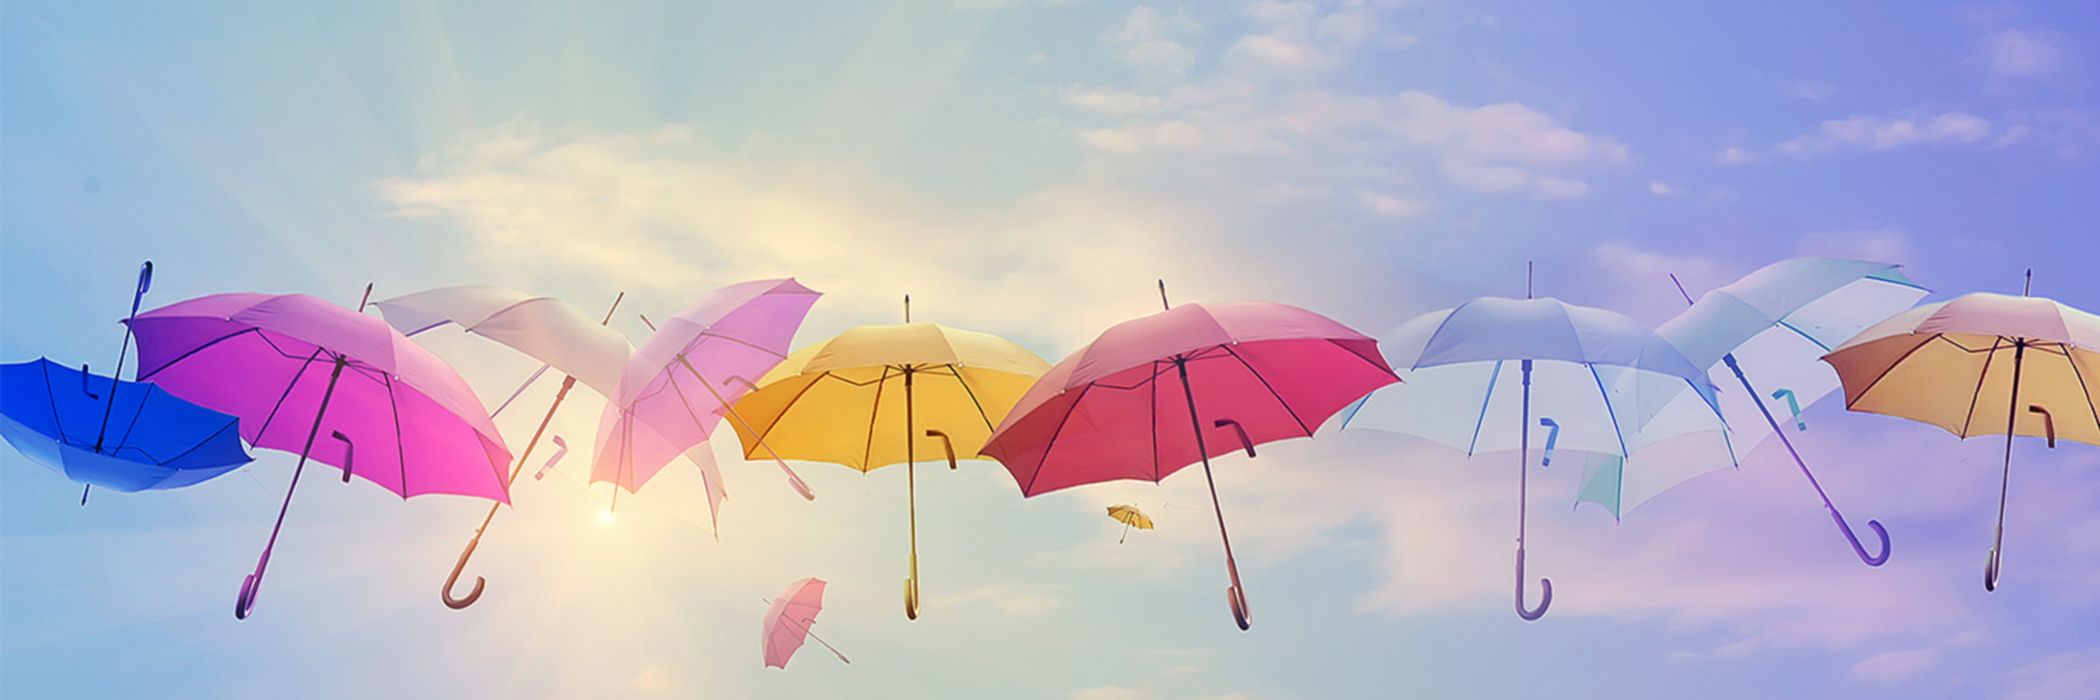 Schwebende bunte Regenschirme